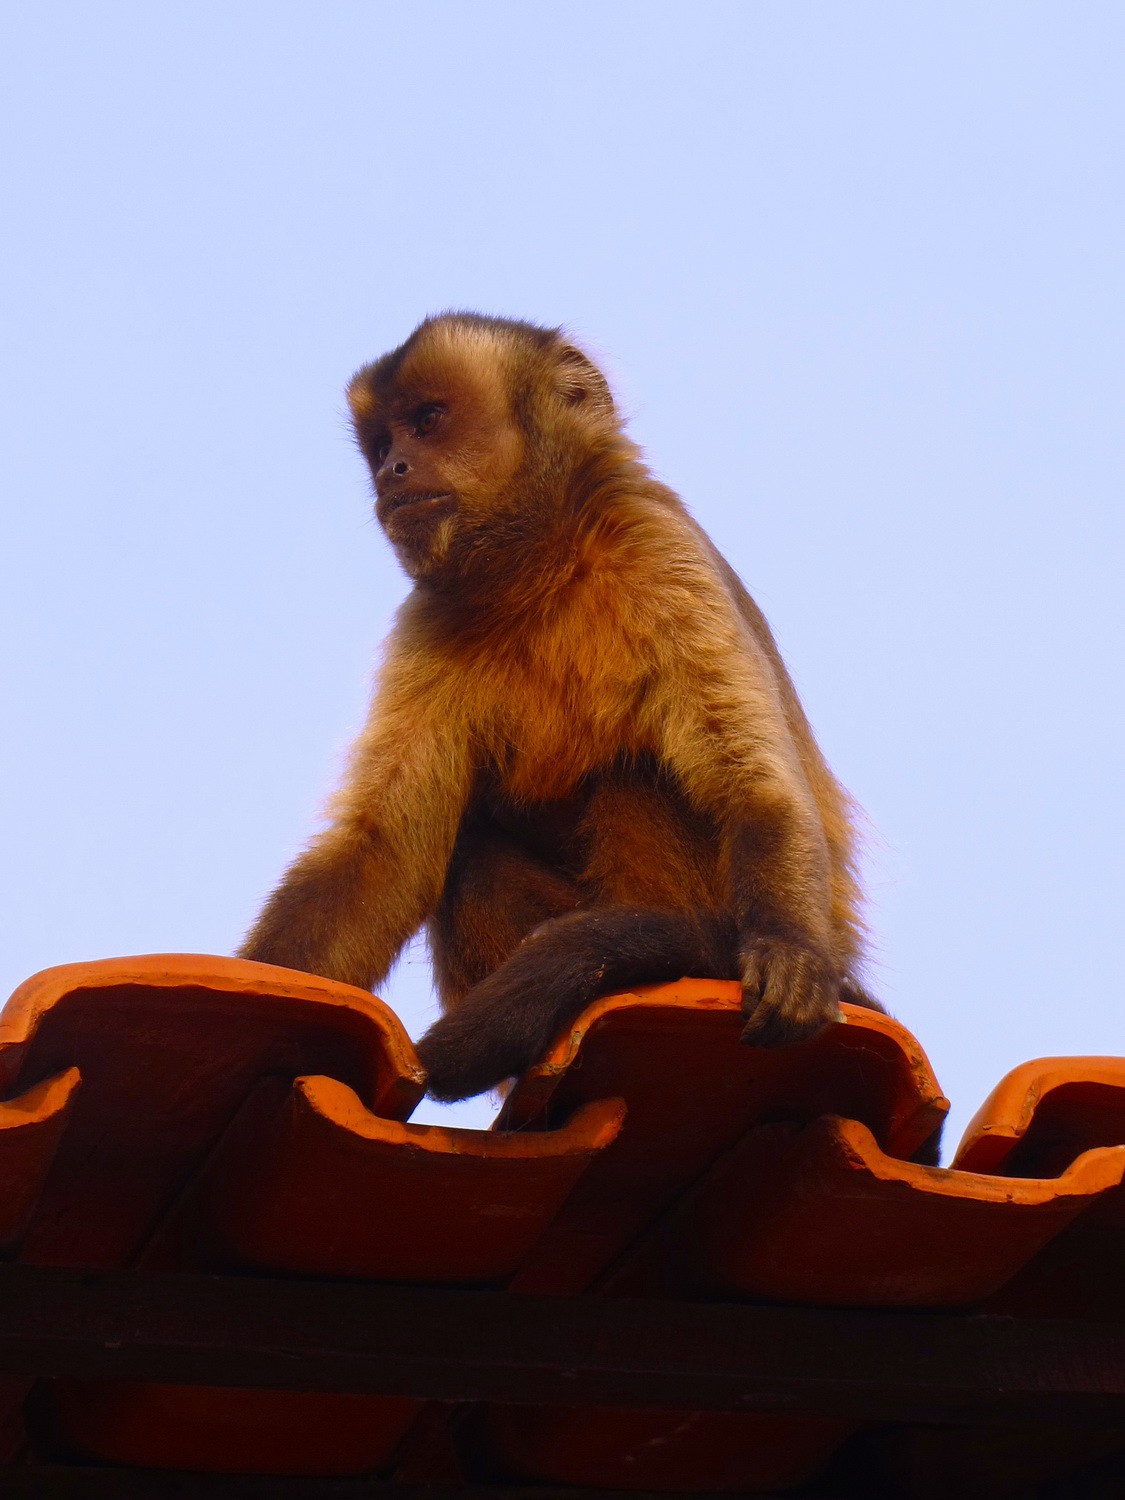 Monkey watching us